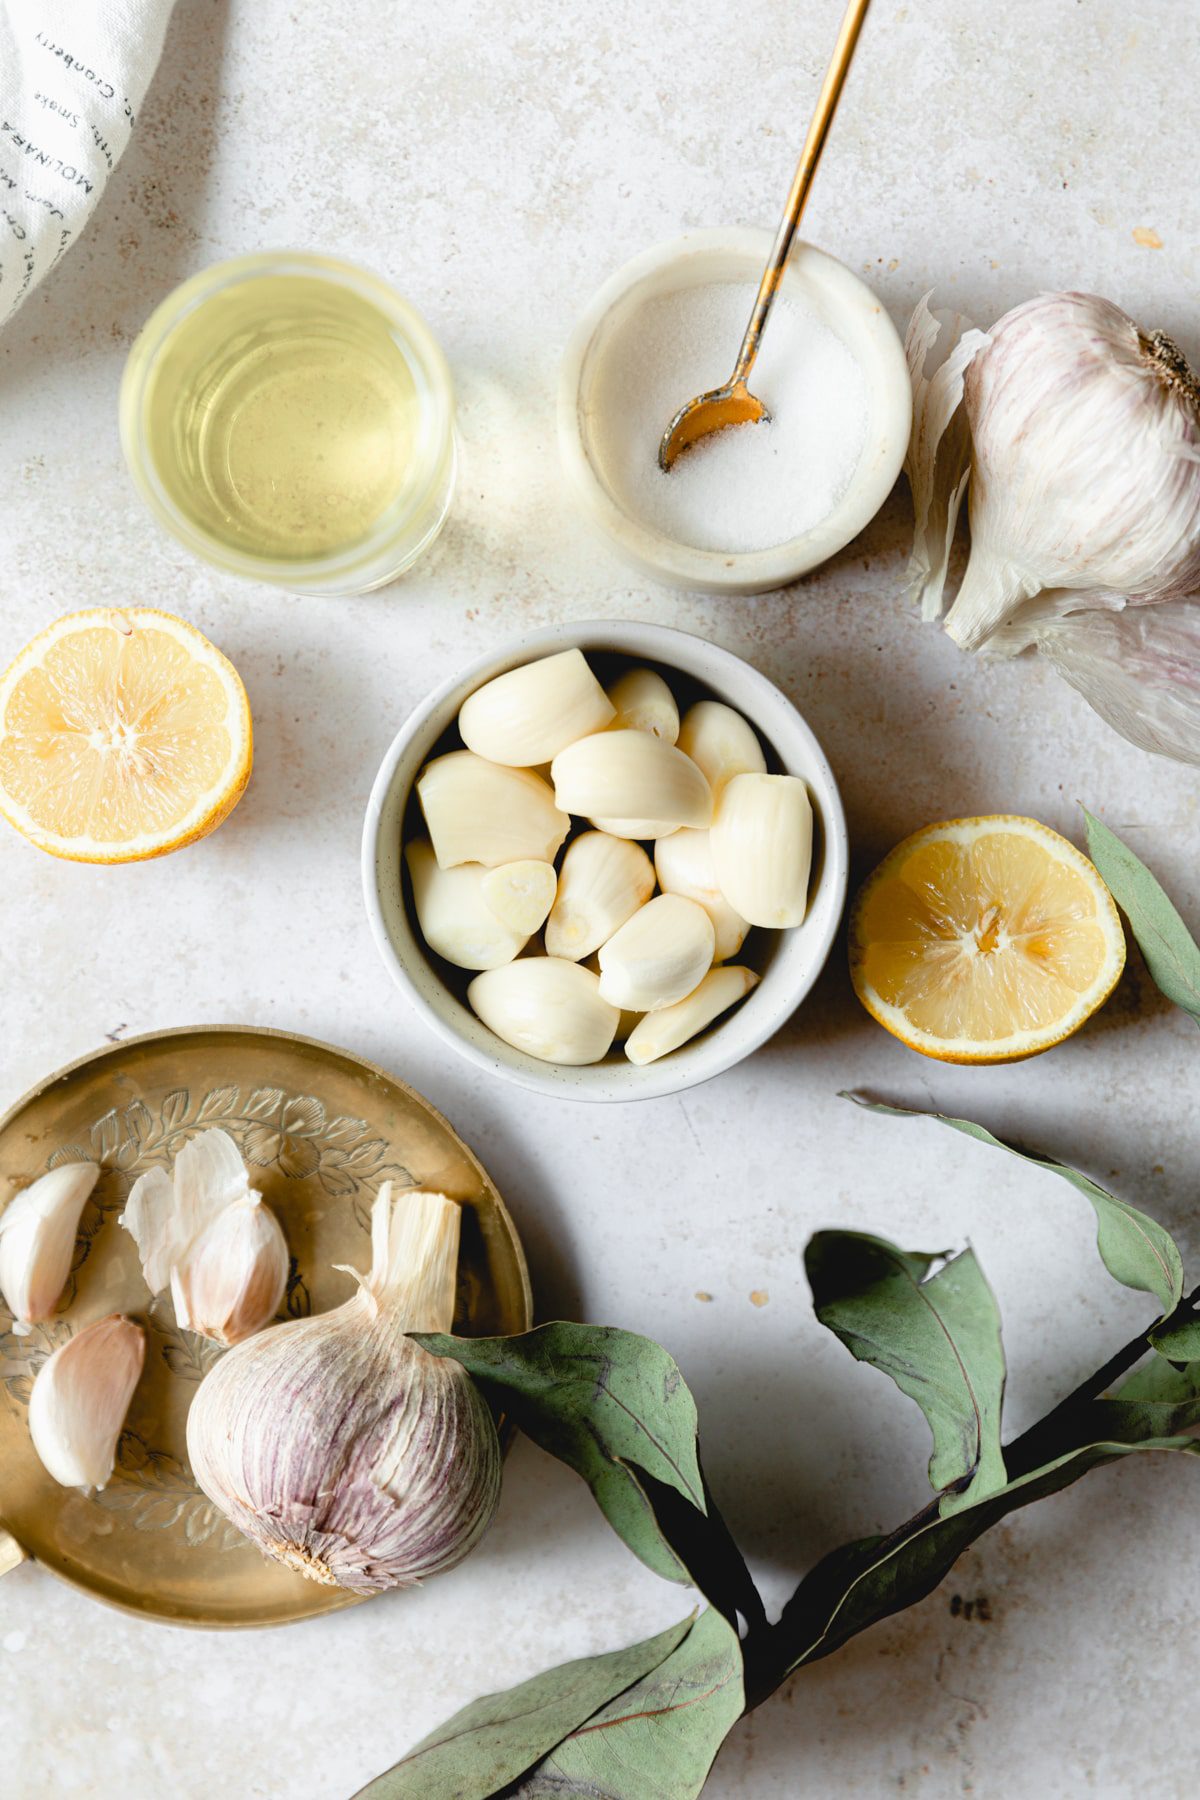 ingredients for toum garlic dip